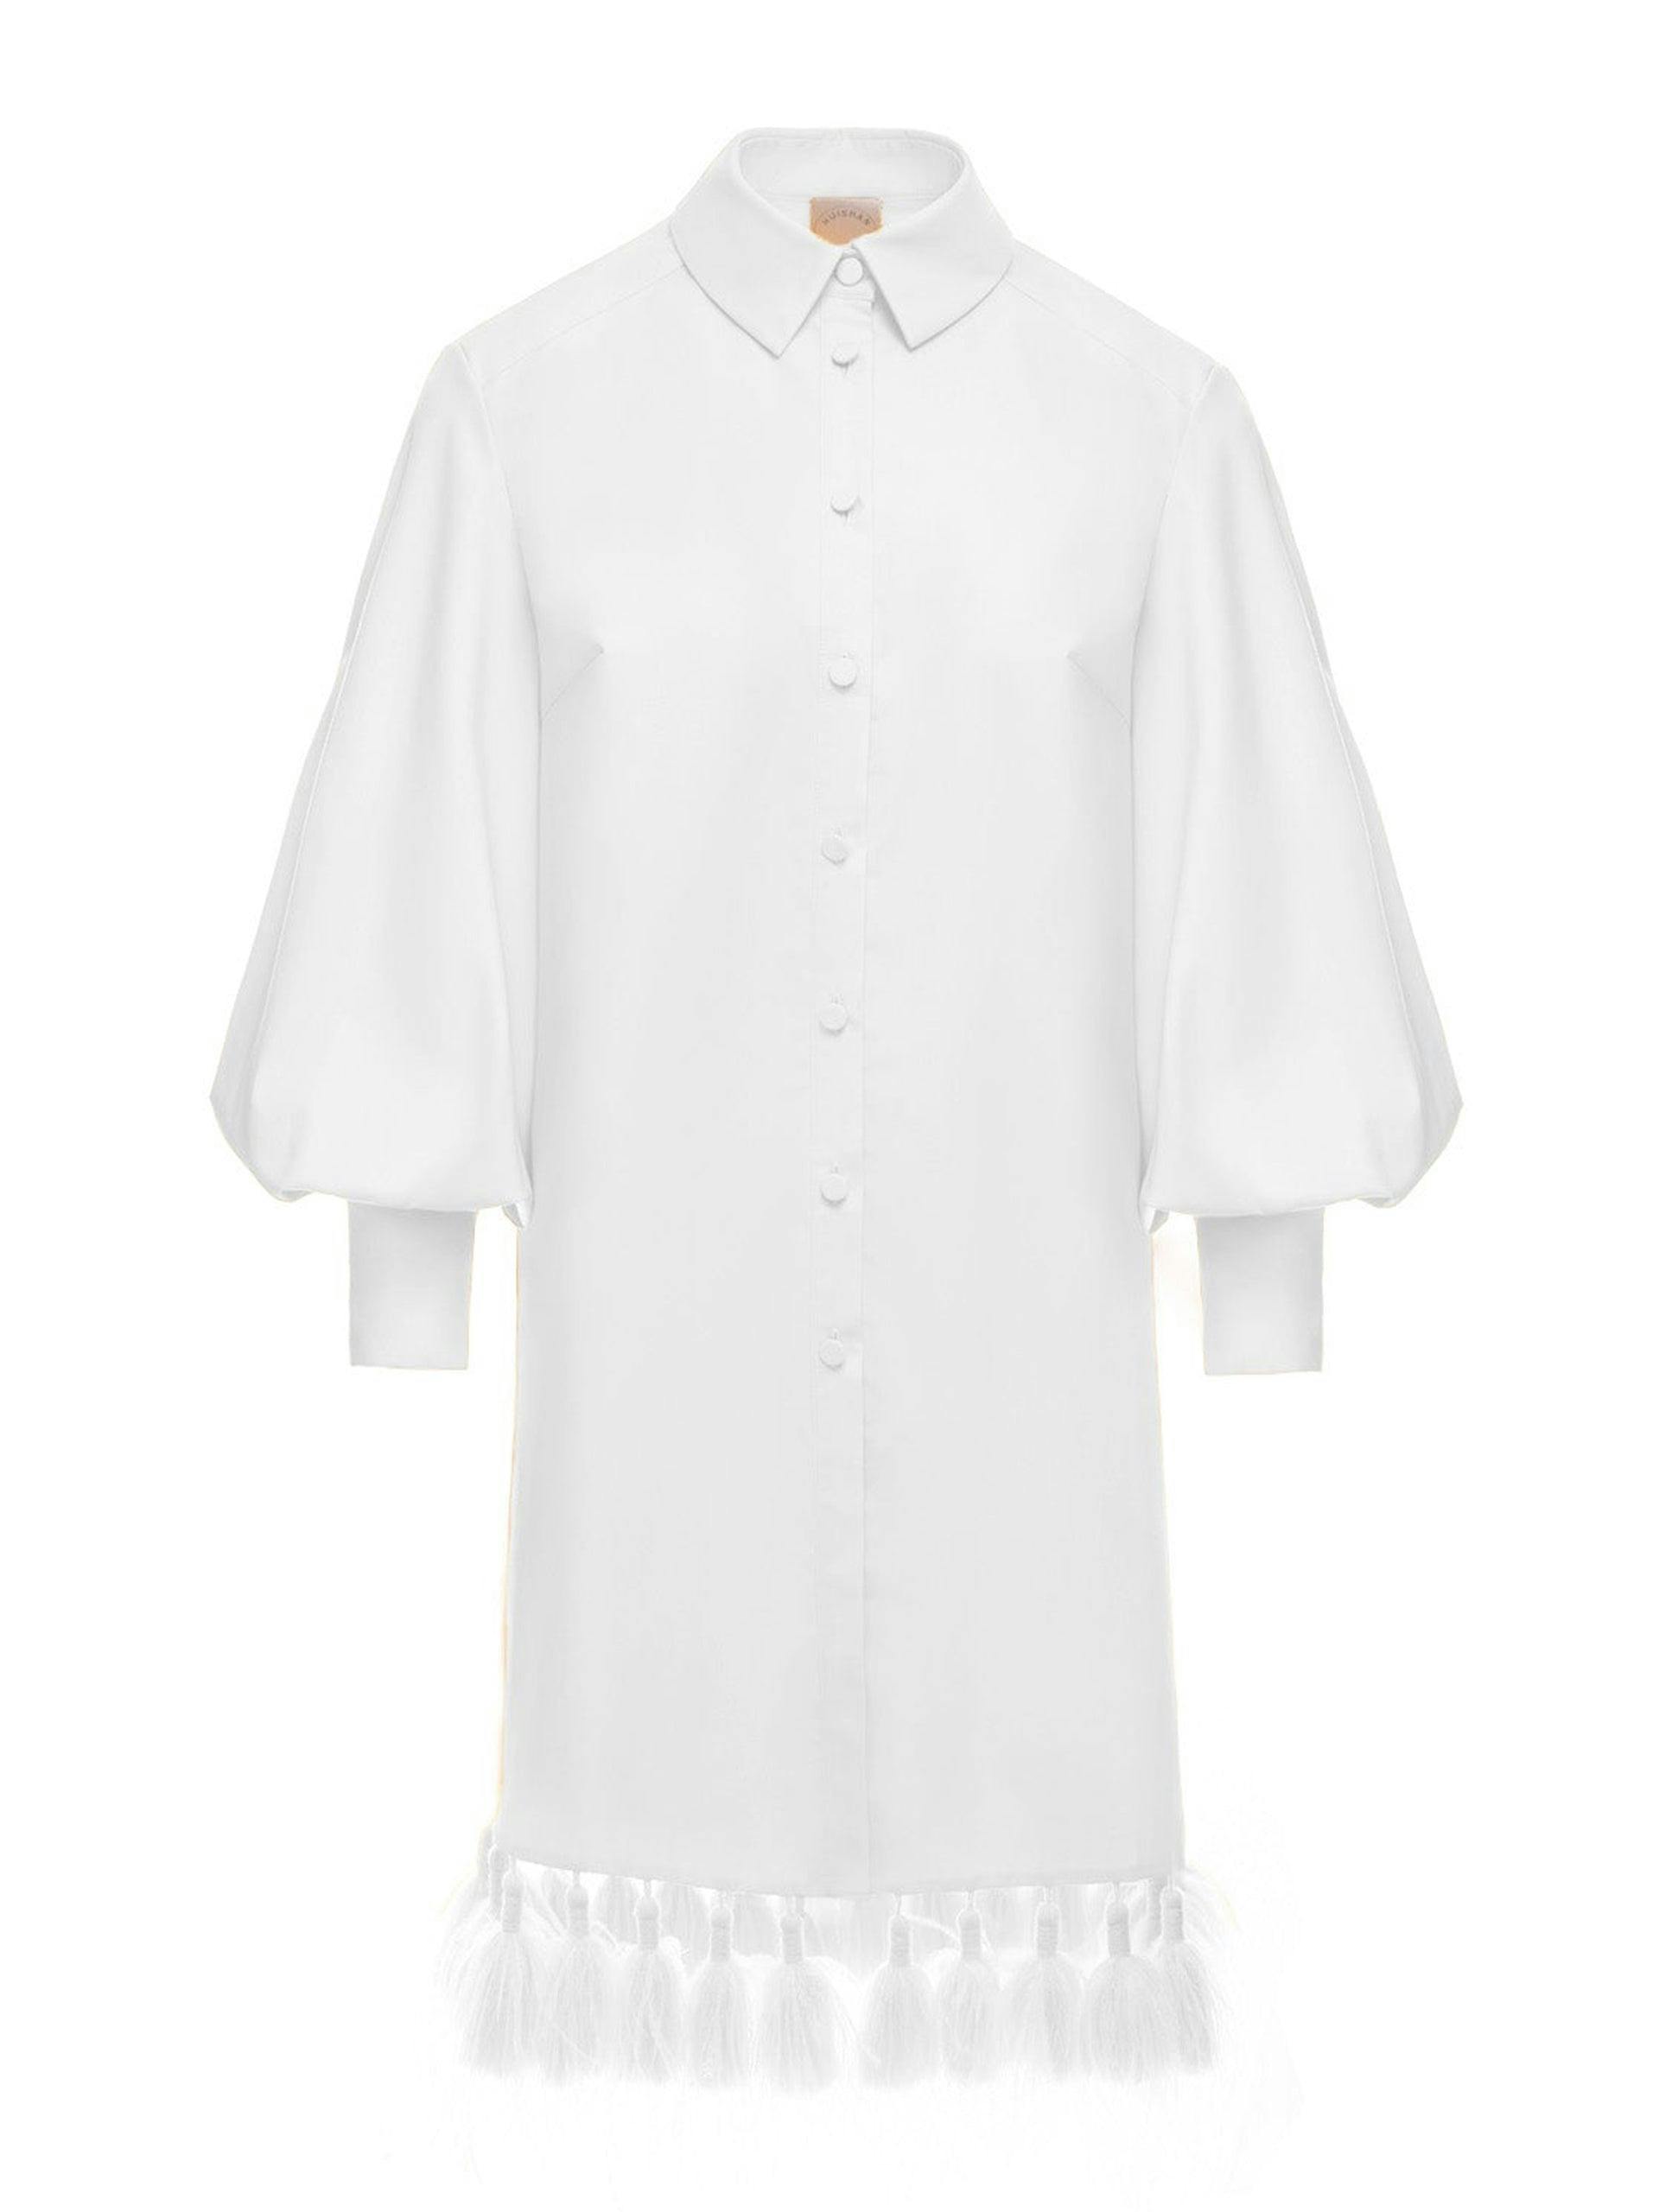 Ibiza white cotton dress